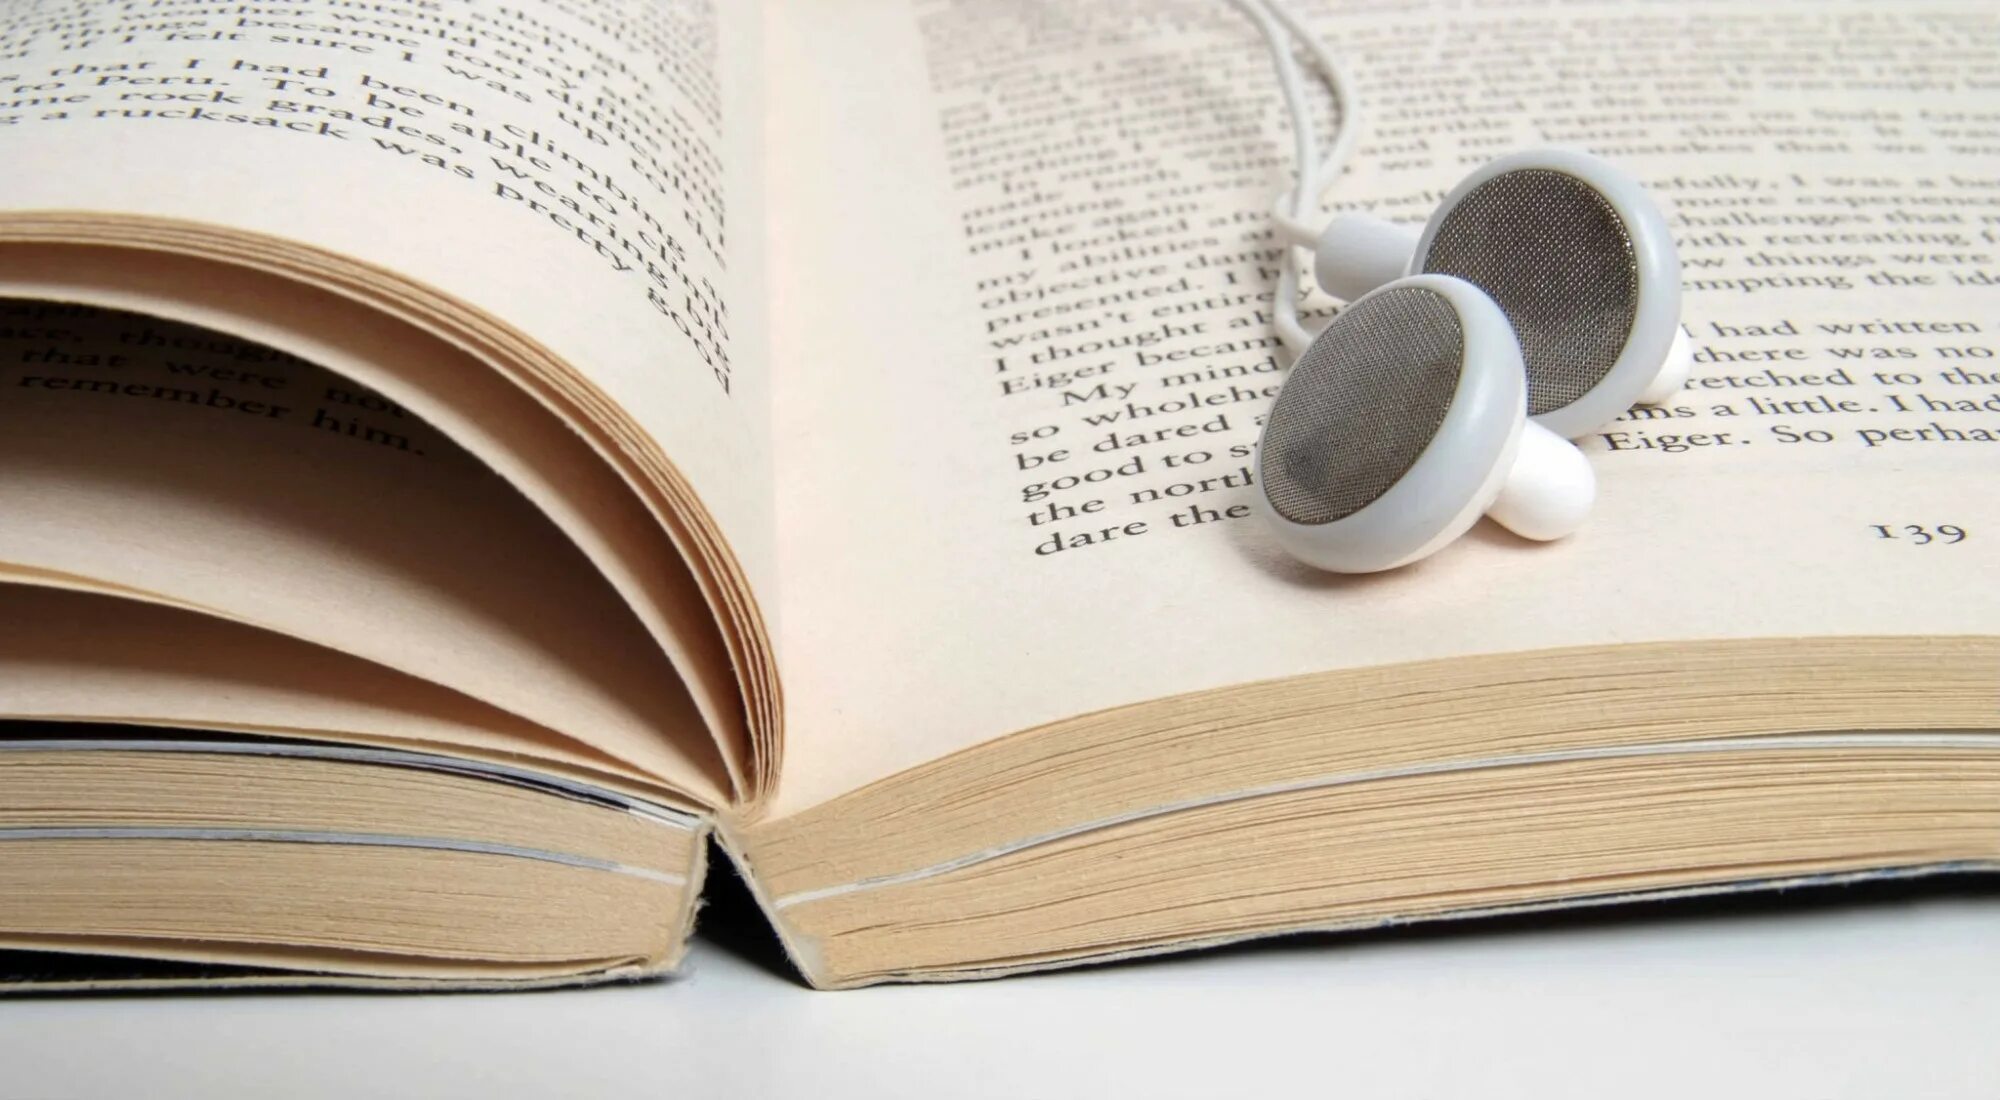 Пятьюдесятью шестью книгами. Listening books. Листенинг книги. Listening book image. Audiobook.